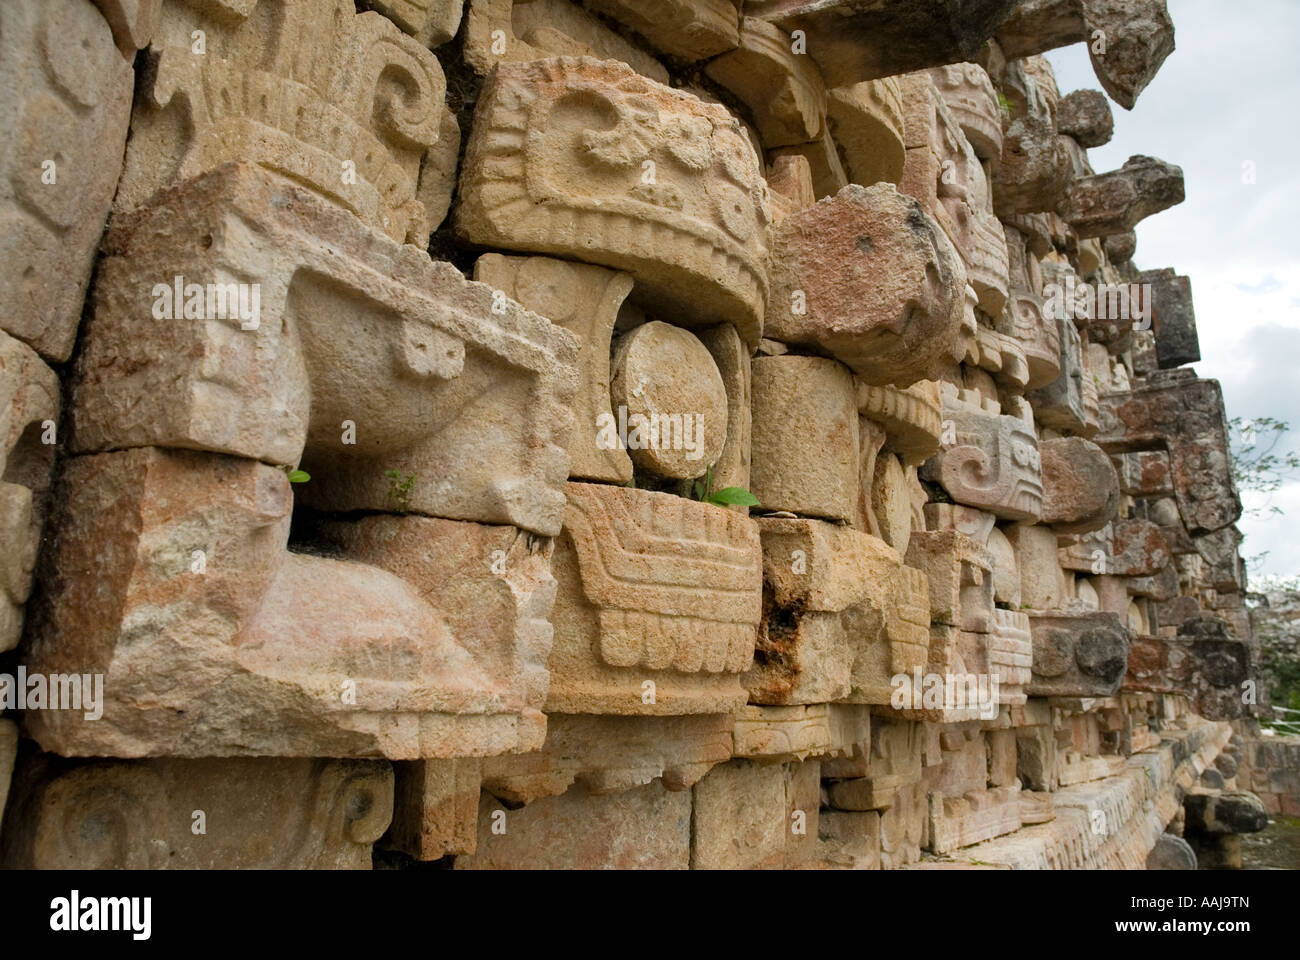 Kabah chac mool ruins in Yucatan, Mexico Stock Photo